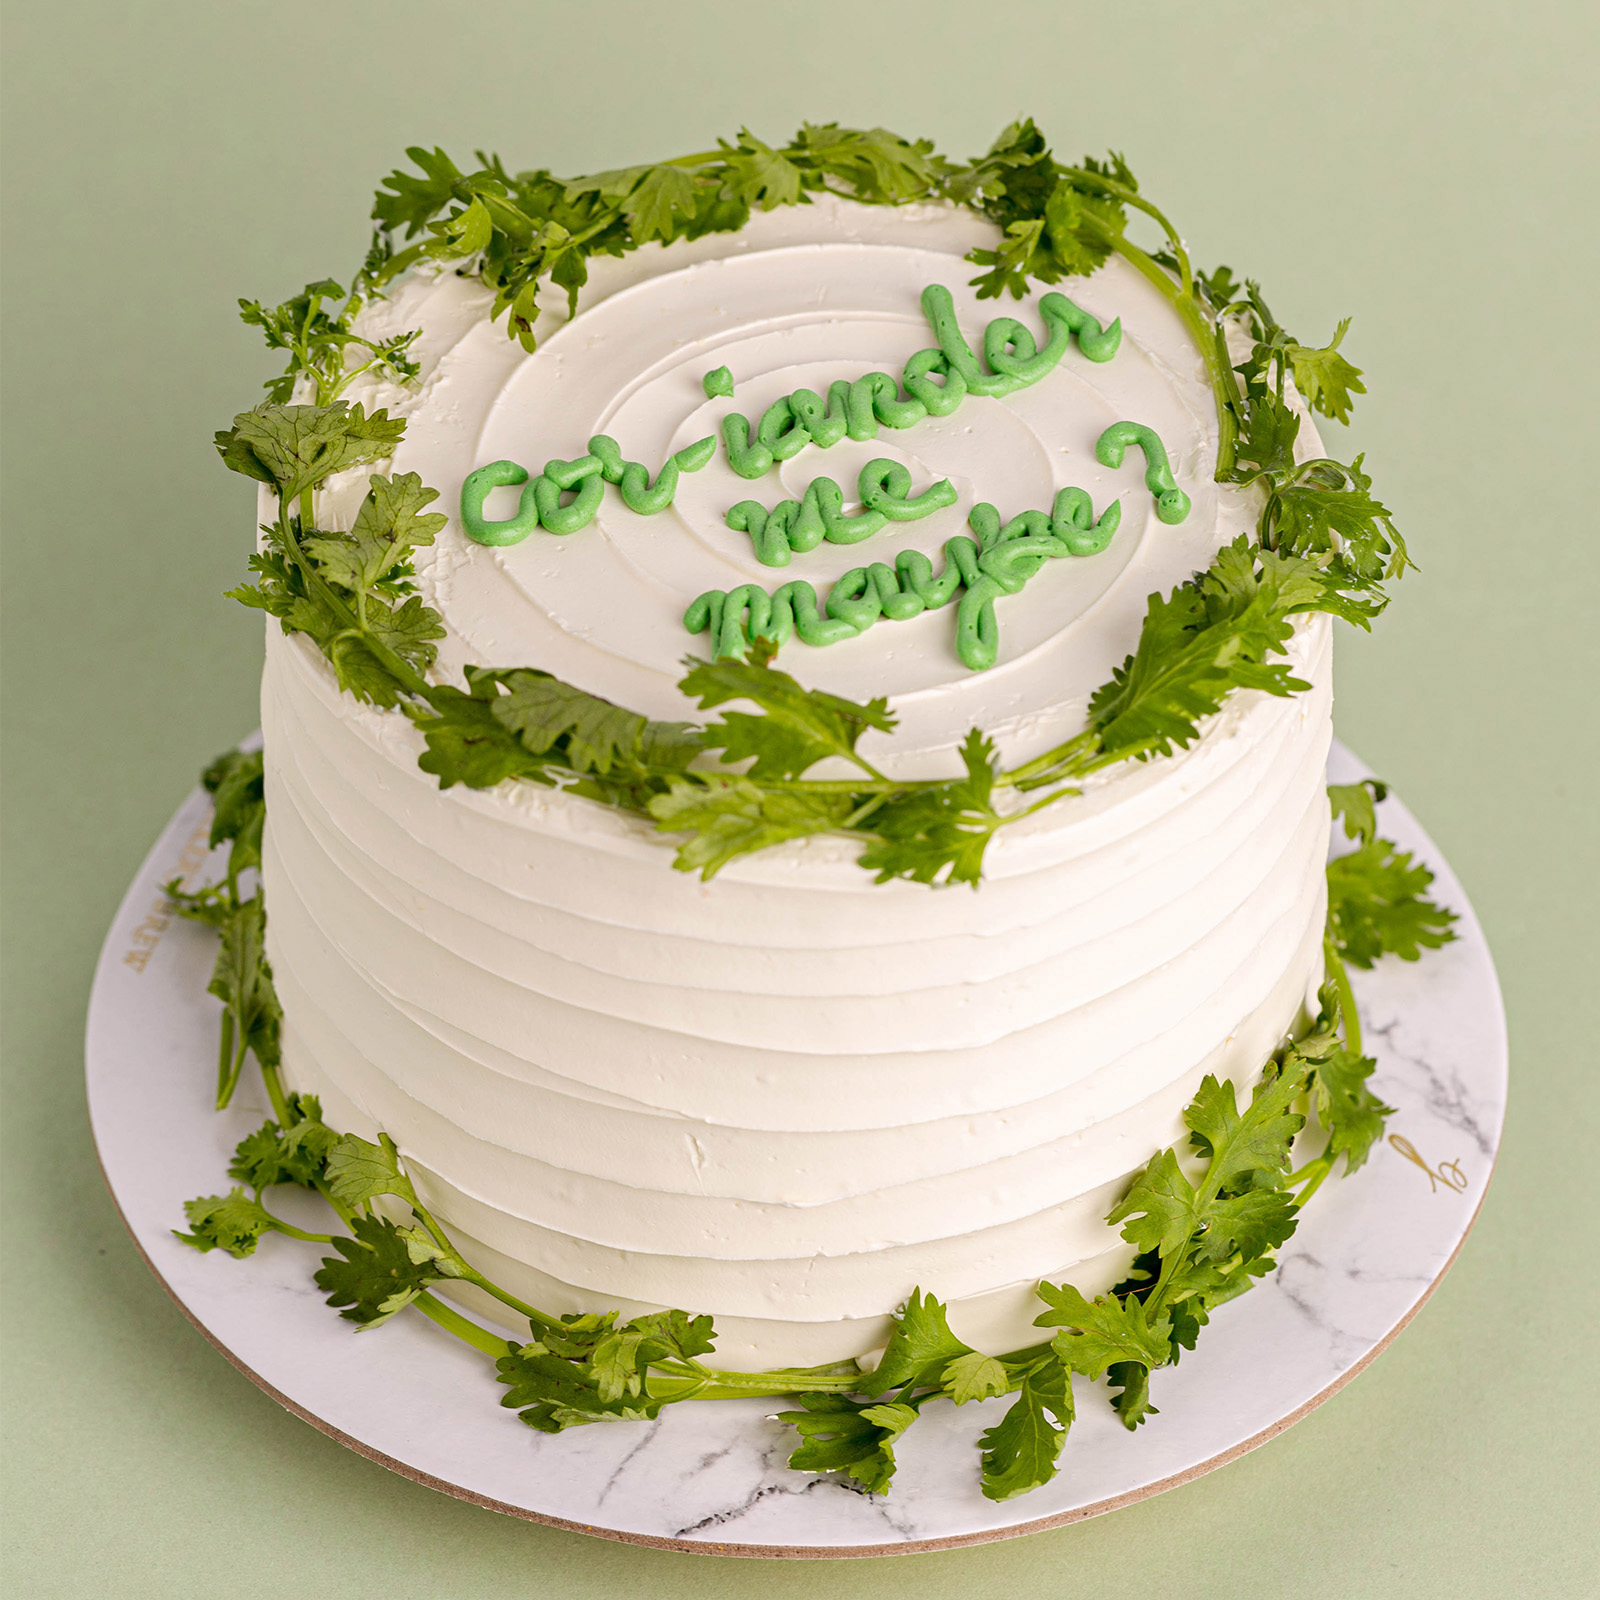 Coriander Dedication Cake, Baker's Brew Studio Online